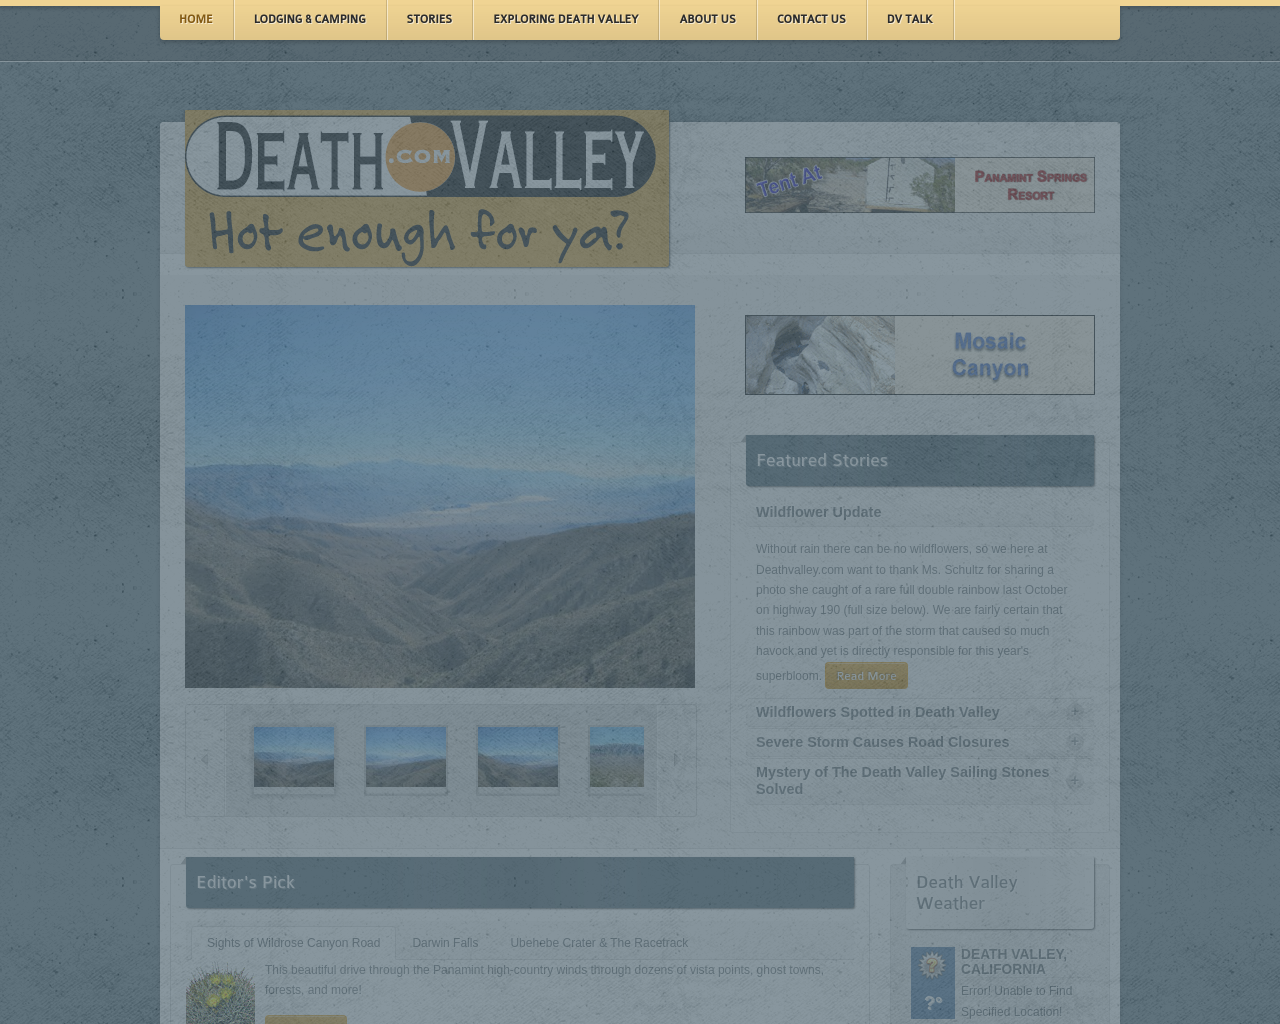 deathvalley.com